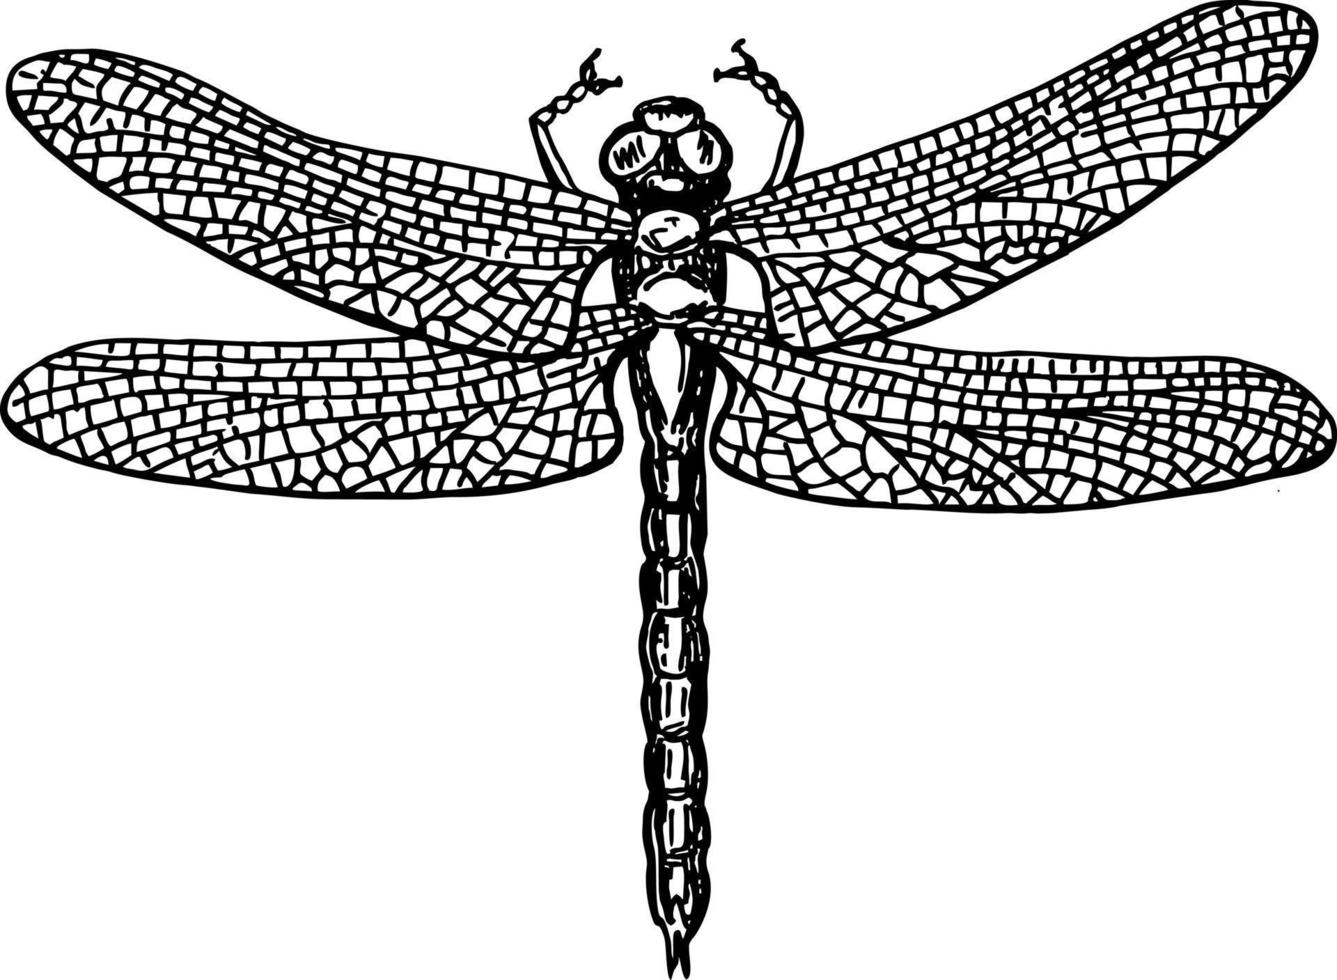 libellule croquis noir et blanc avec des ailes délicates illustration vectorielle vecteur